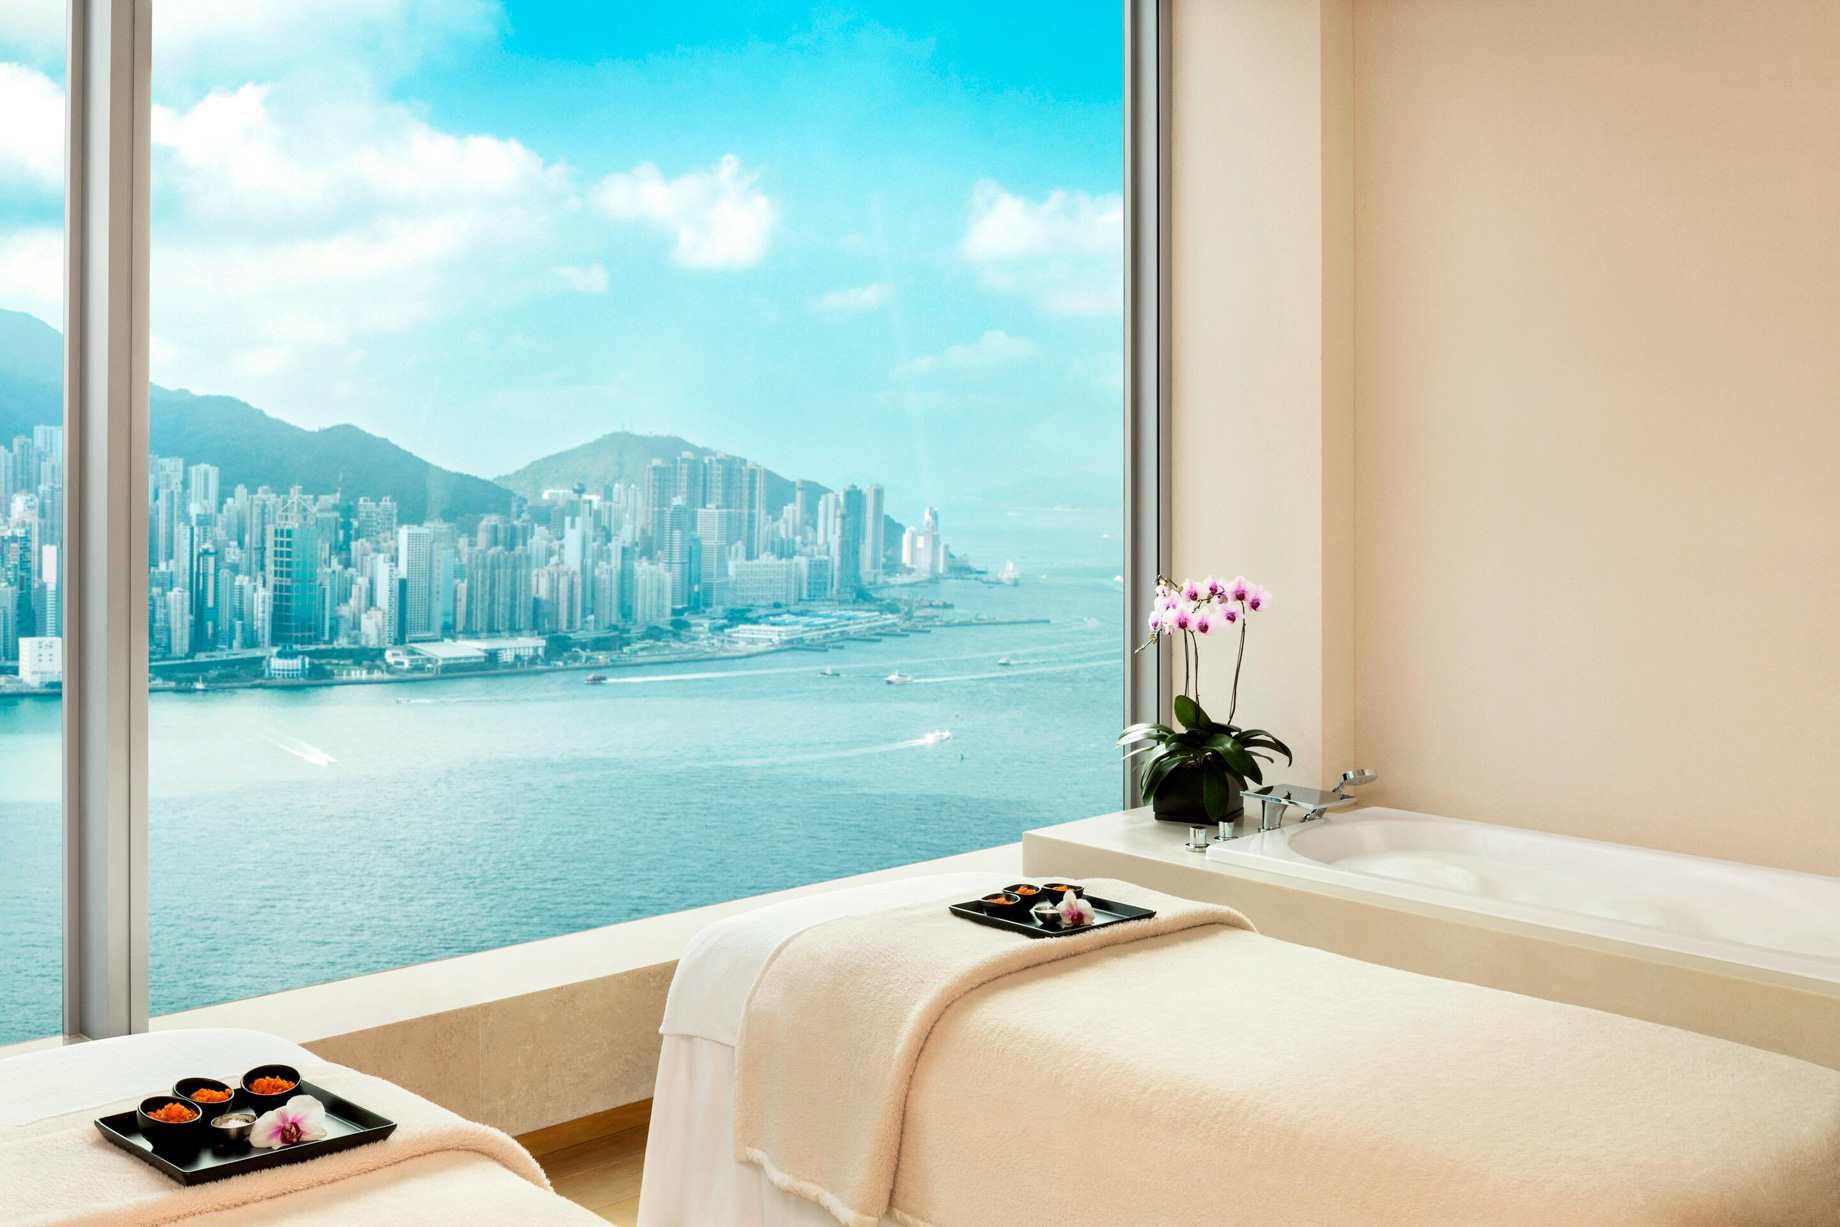 W Hong Kong Hotel – Hong Kong – Bliss Spa Treatment Room View